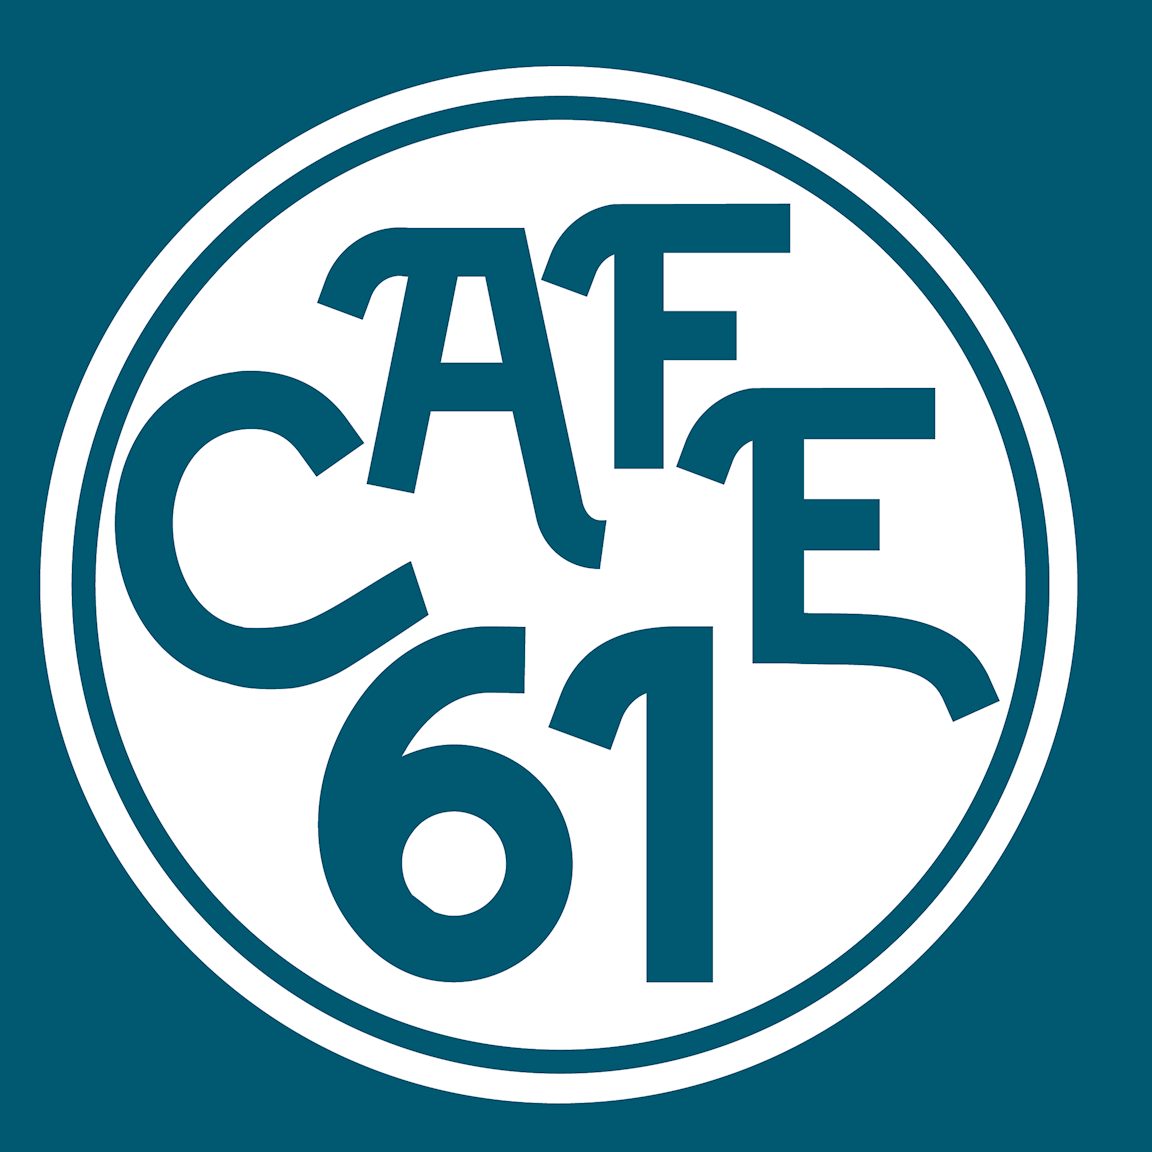 Cafe 61 logo